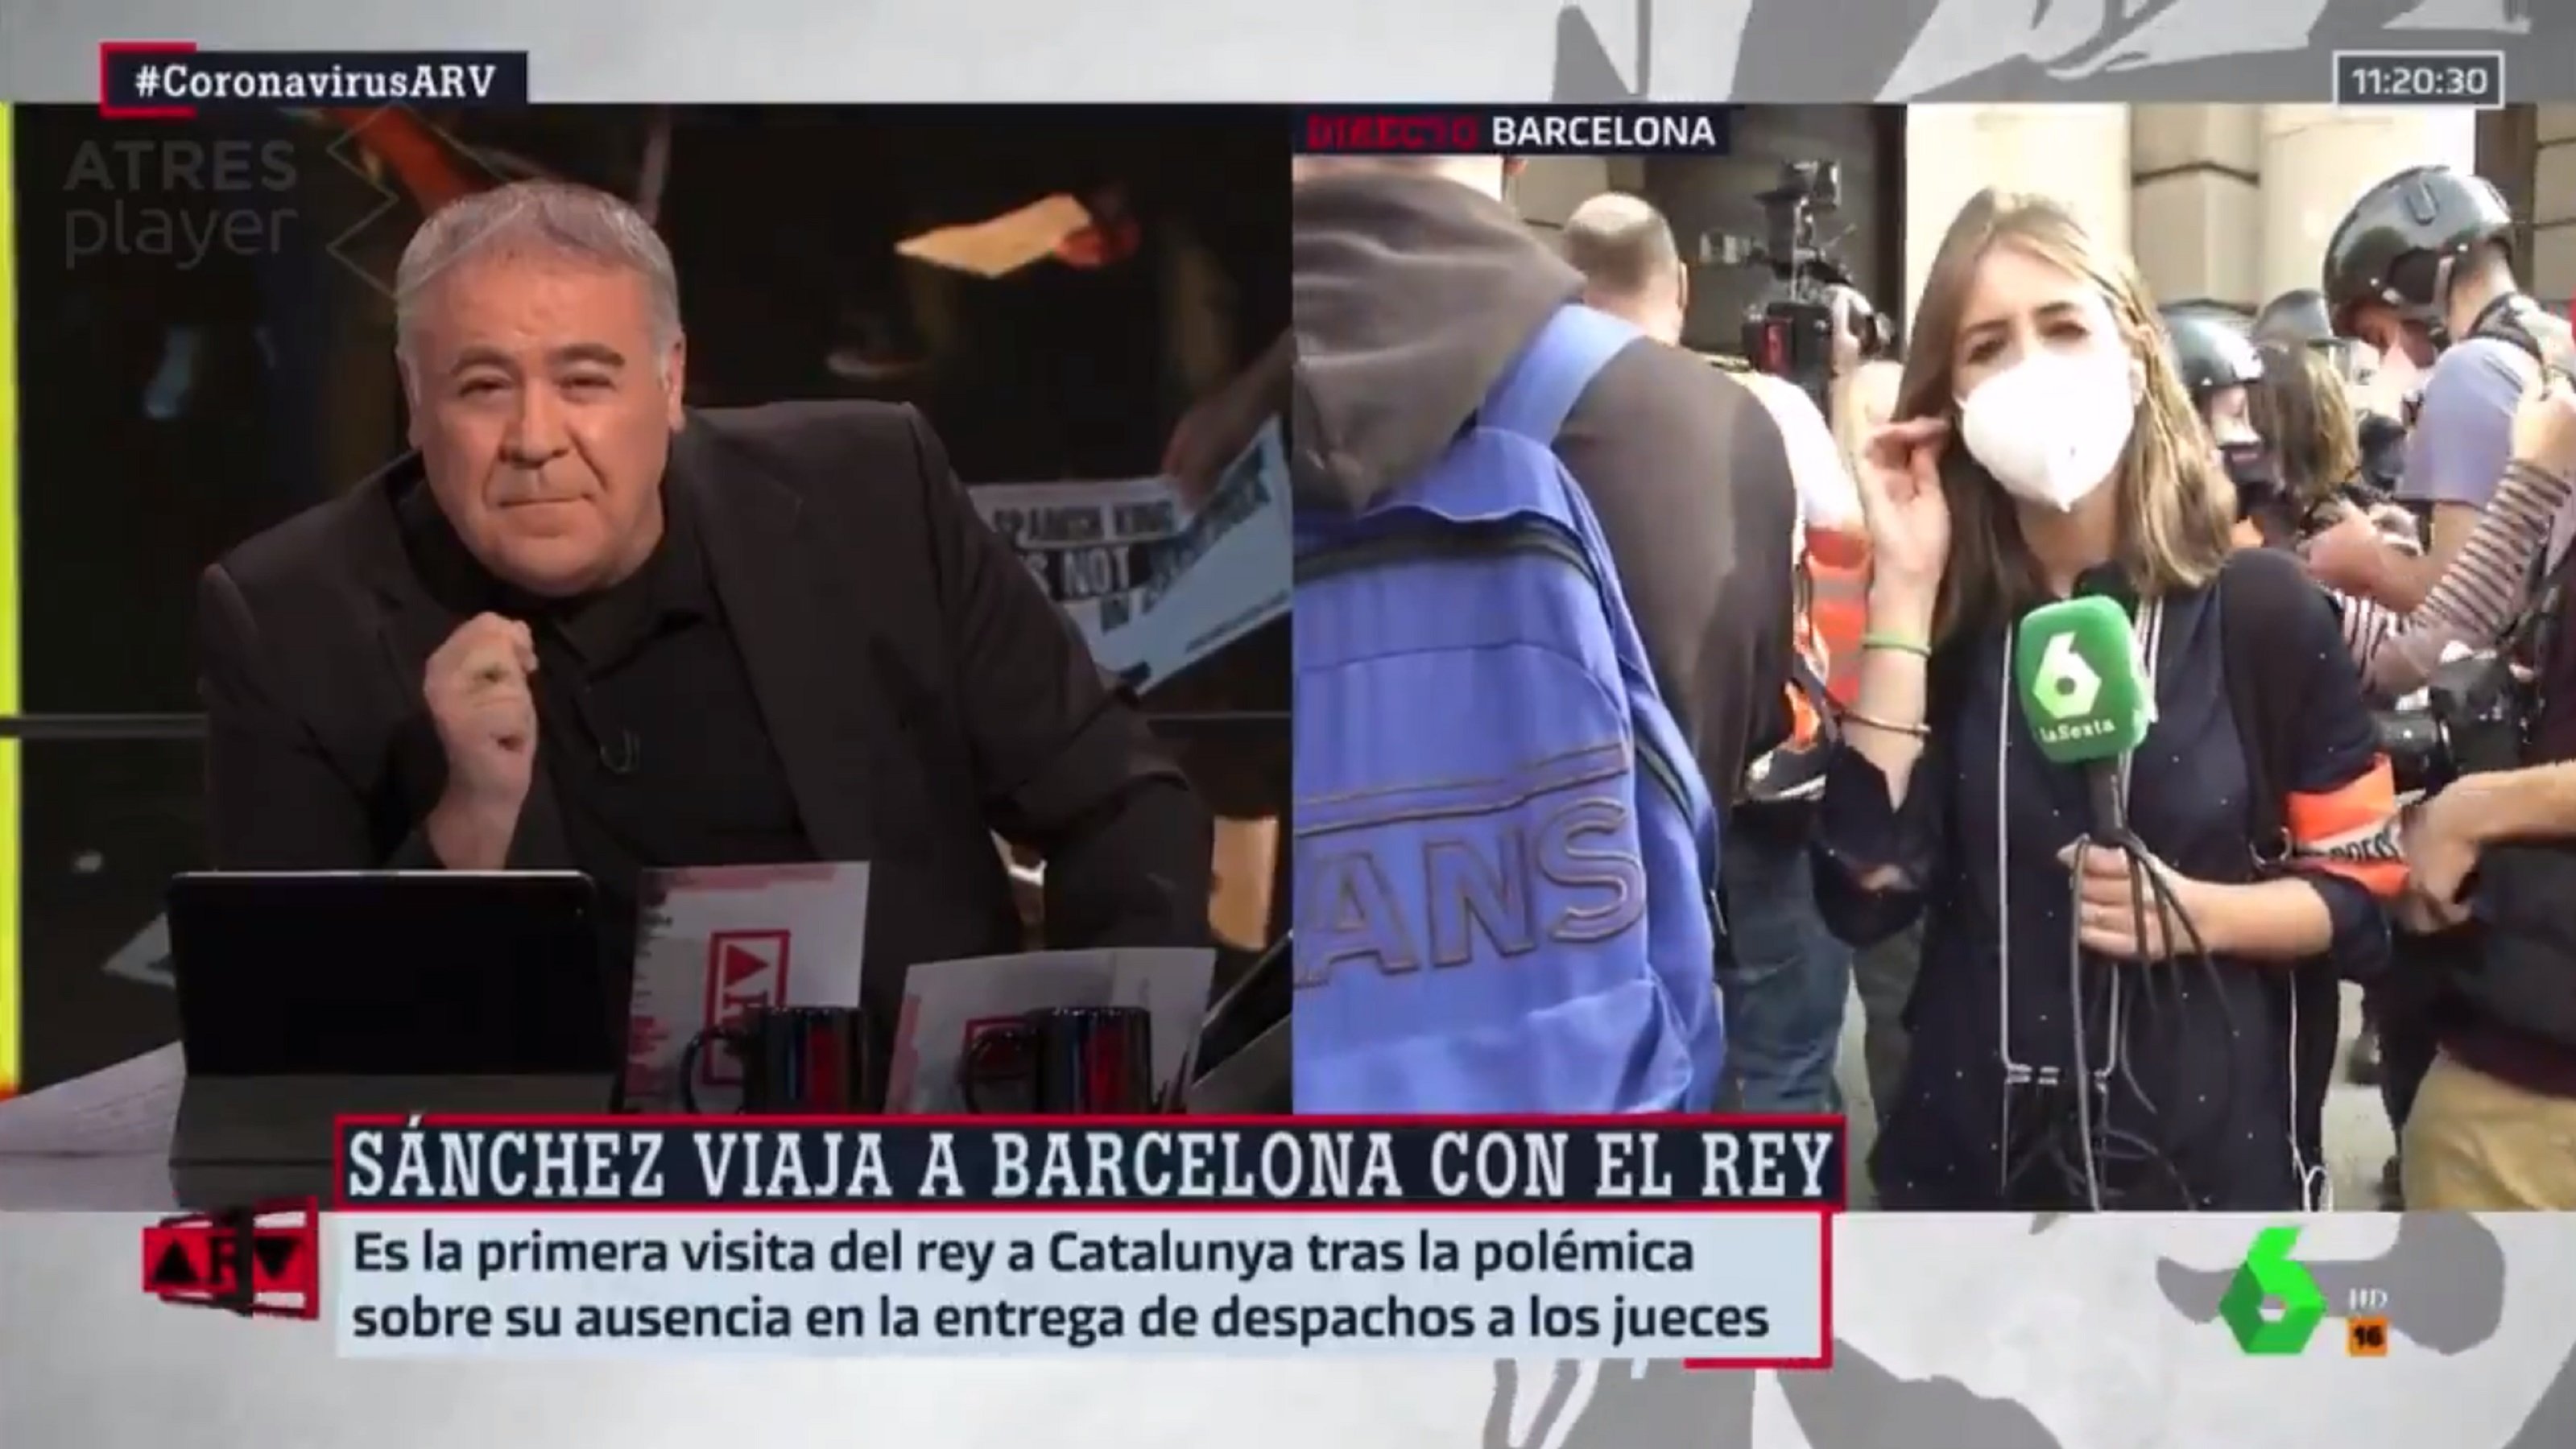 El crit que ha sentit Ferreras en un directe a Barcelona: "Pide perdón"